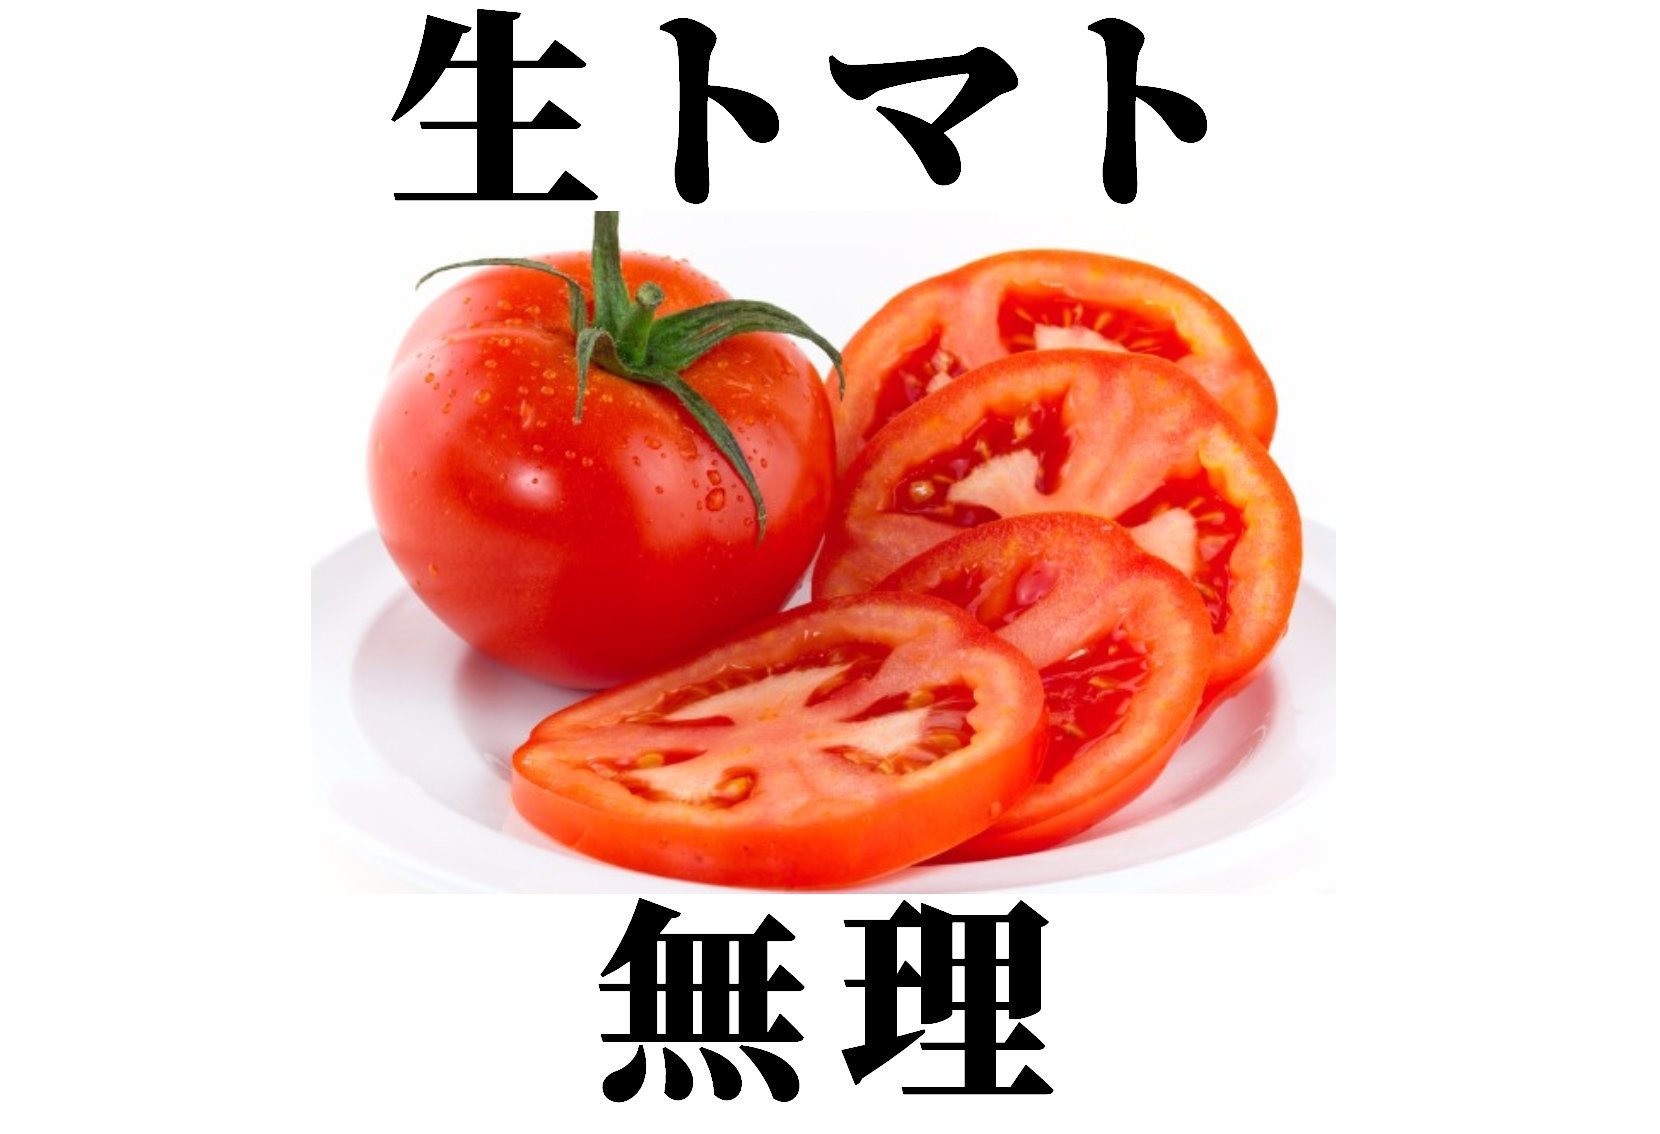 ネックレス Chrome Hearts - トマト嫌いさん専用の通販 by おみ's shop 